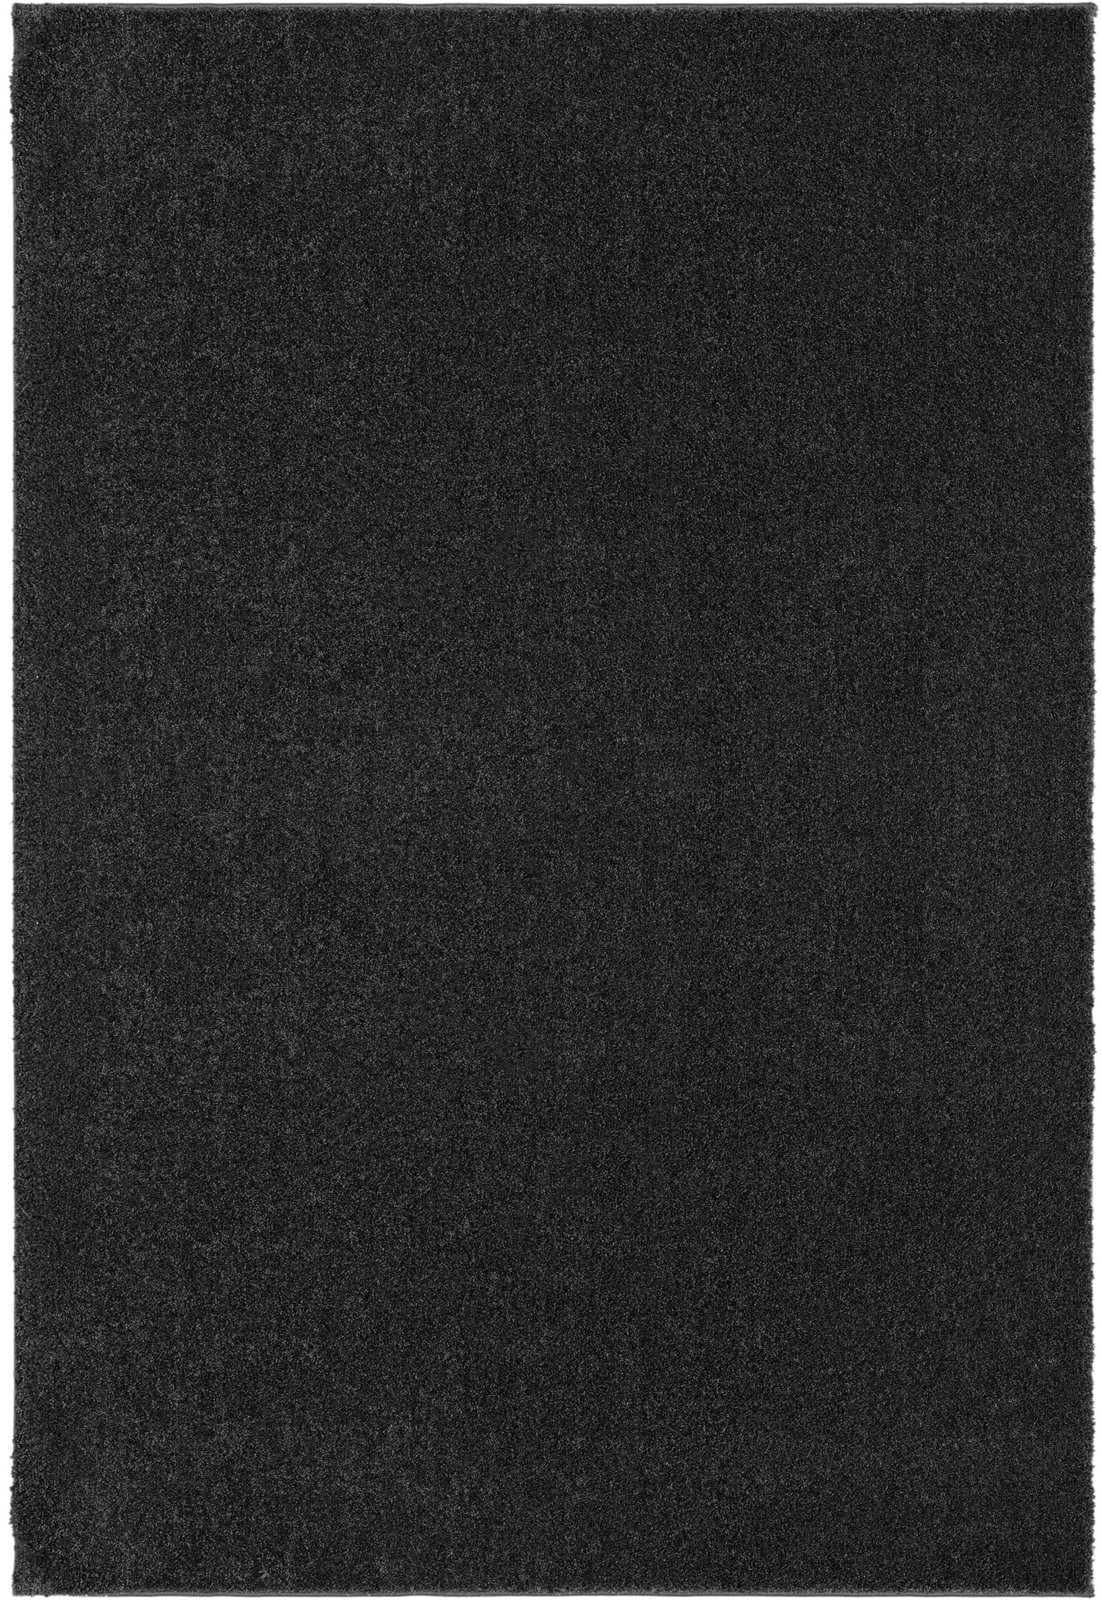             Zacht kortpolig tapijt in antraciet - 110 x 60 cm
        